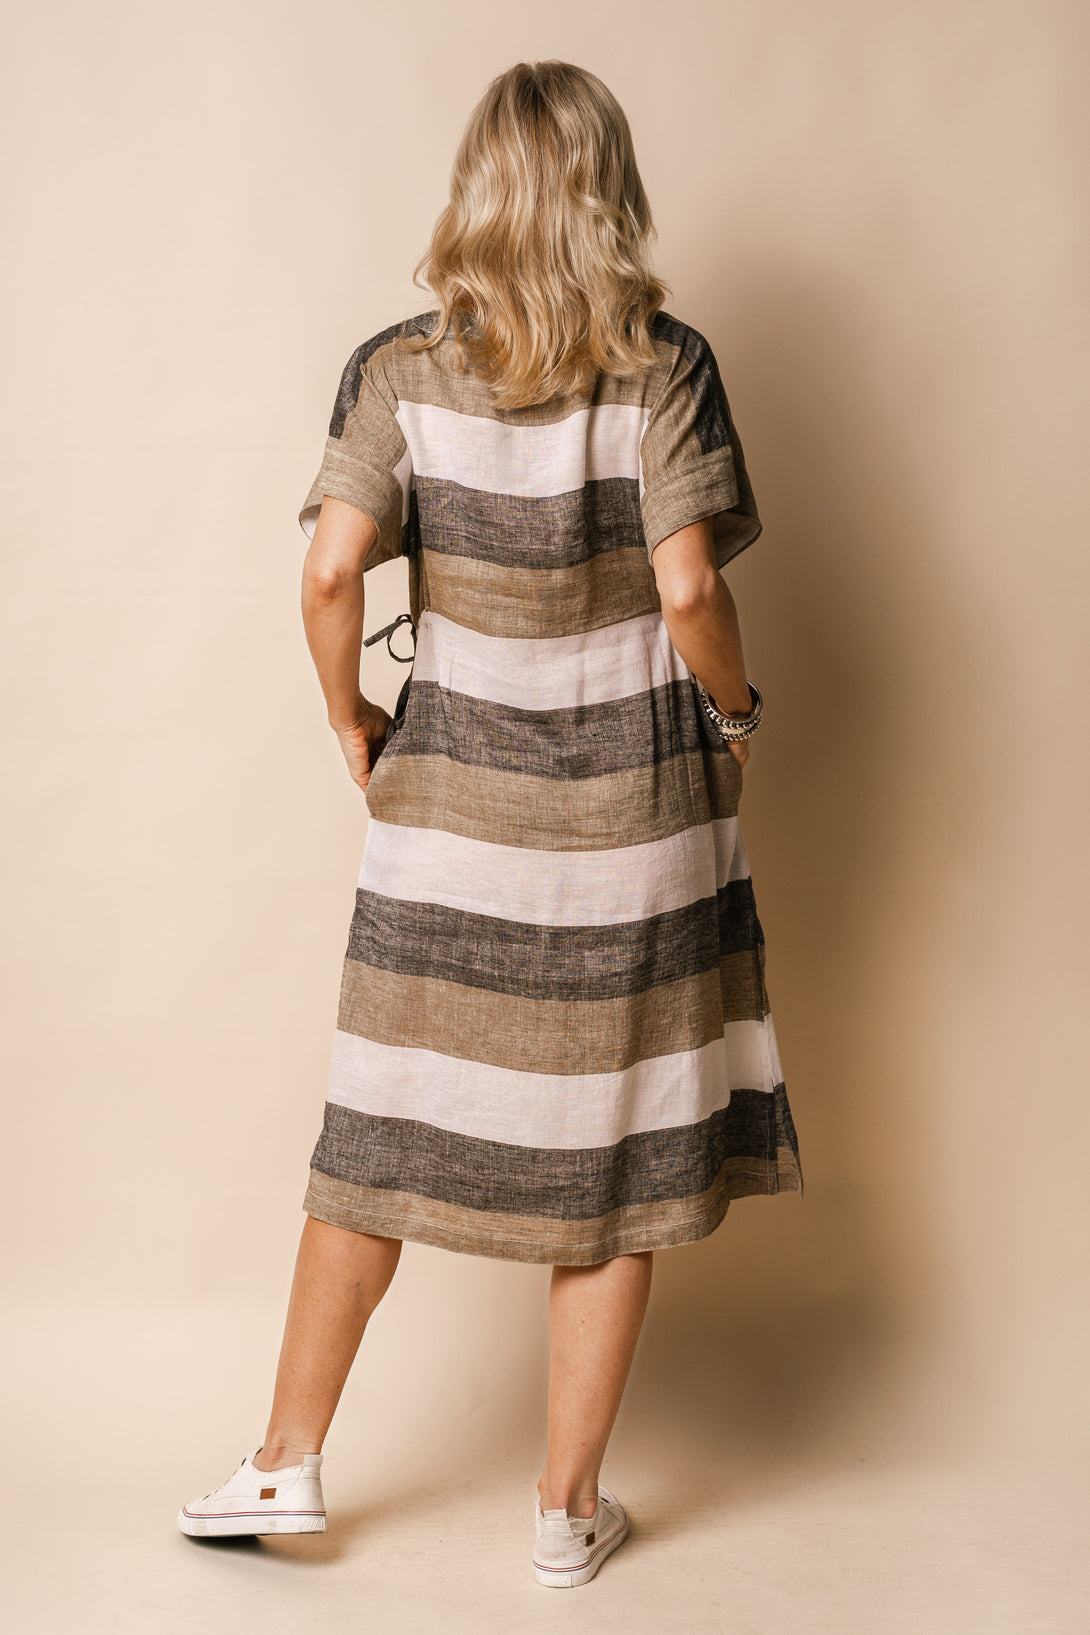 Moxie Linen Blend Dress in Desert - Imagine Fashion